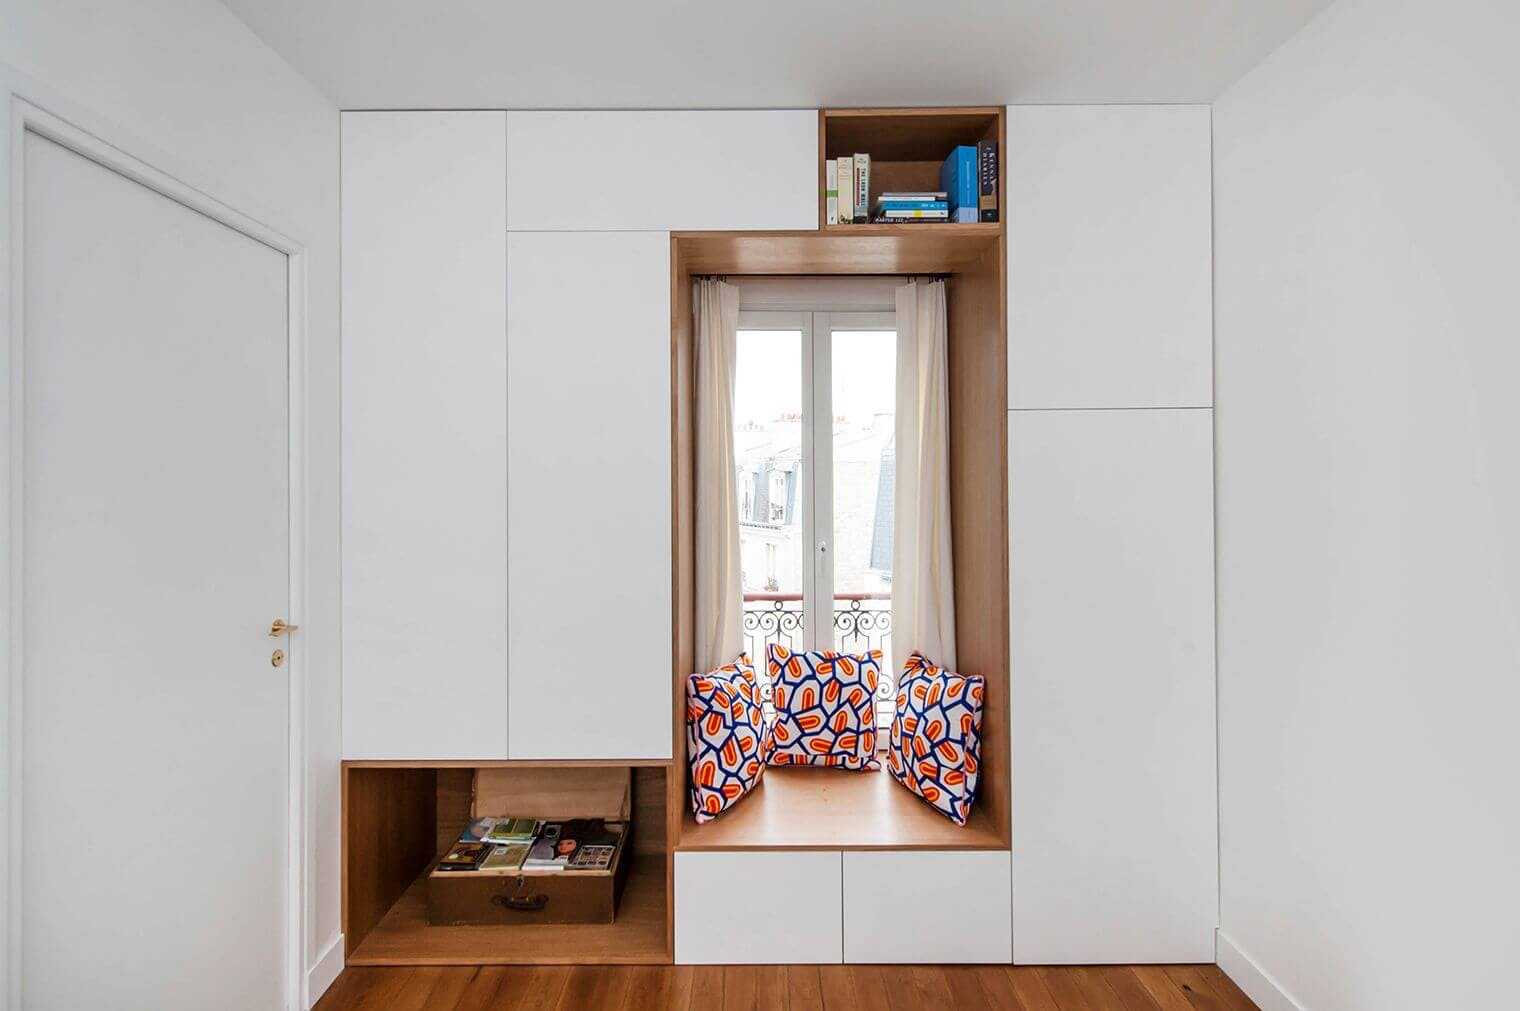 Шкаф вокруг окна в комнате: варианты расположения и комбинирования мебели